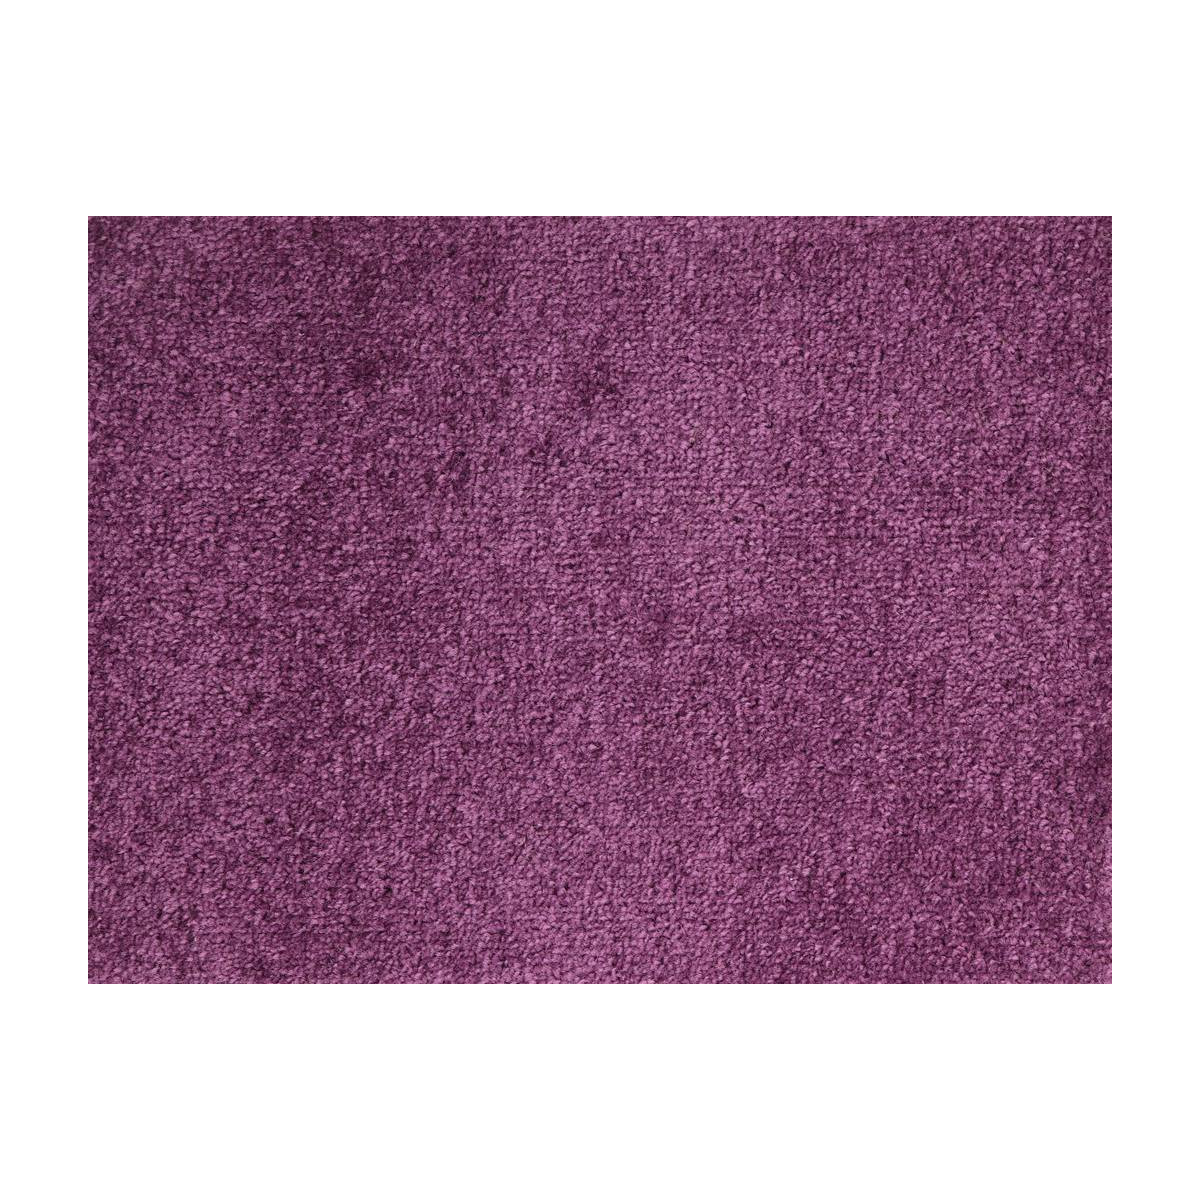 AKCE: 107x470 cm Metrážový koberec Dynasty 45